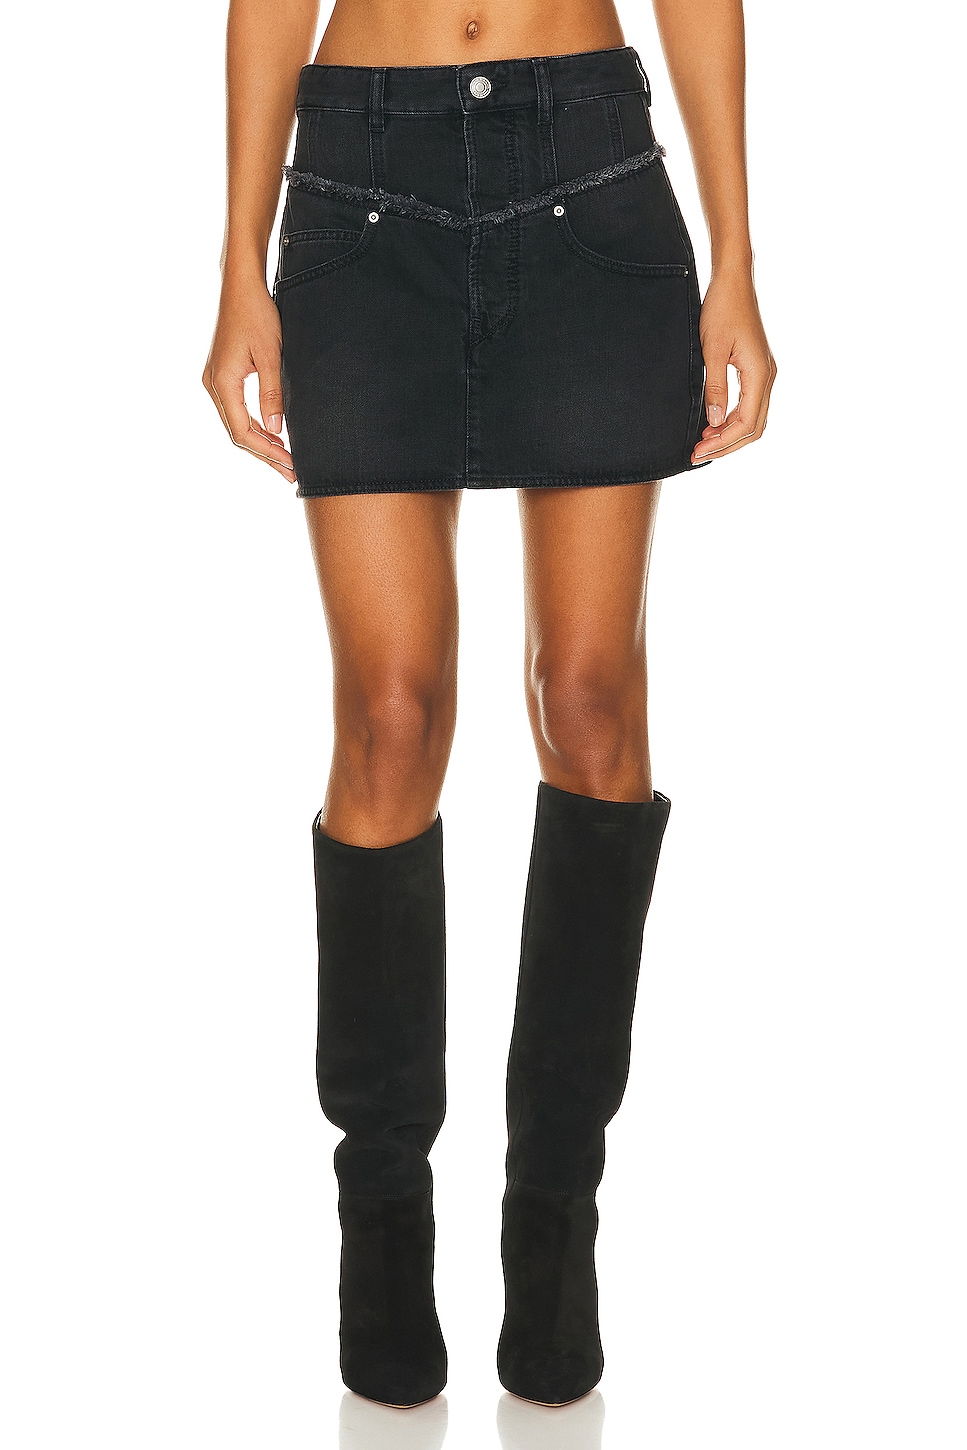 Image 1 of Isabel Marant Narjis Skirt in Black